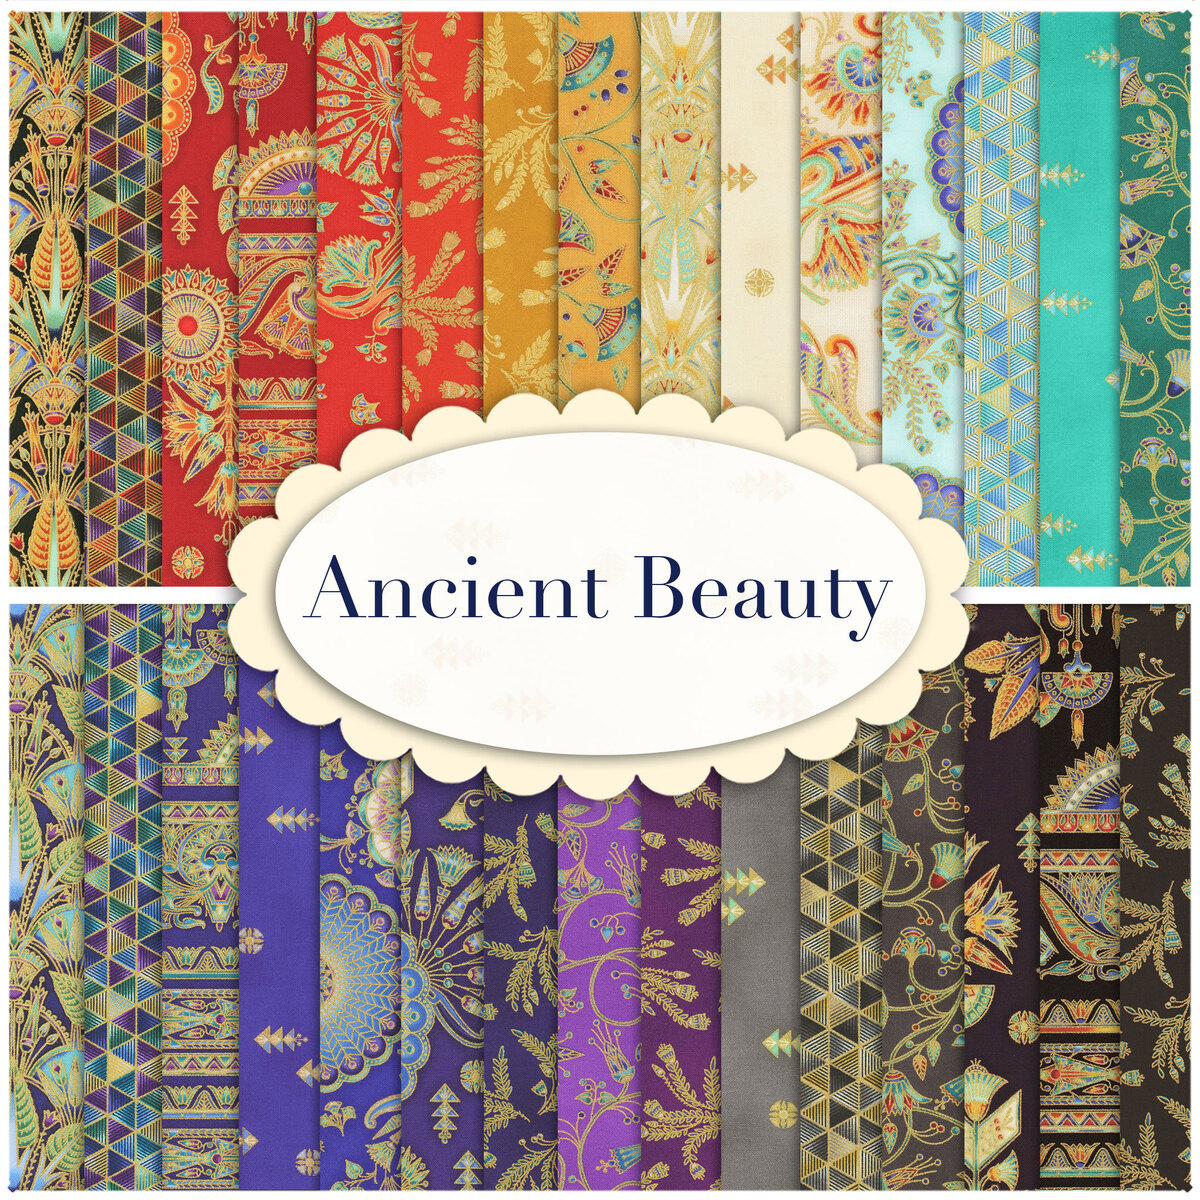 Ancient Beauty 30 FQ Set from Robert Kaufman Fabrics